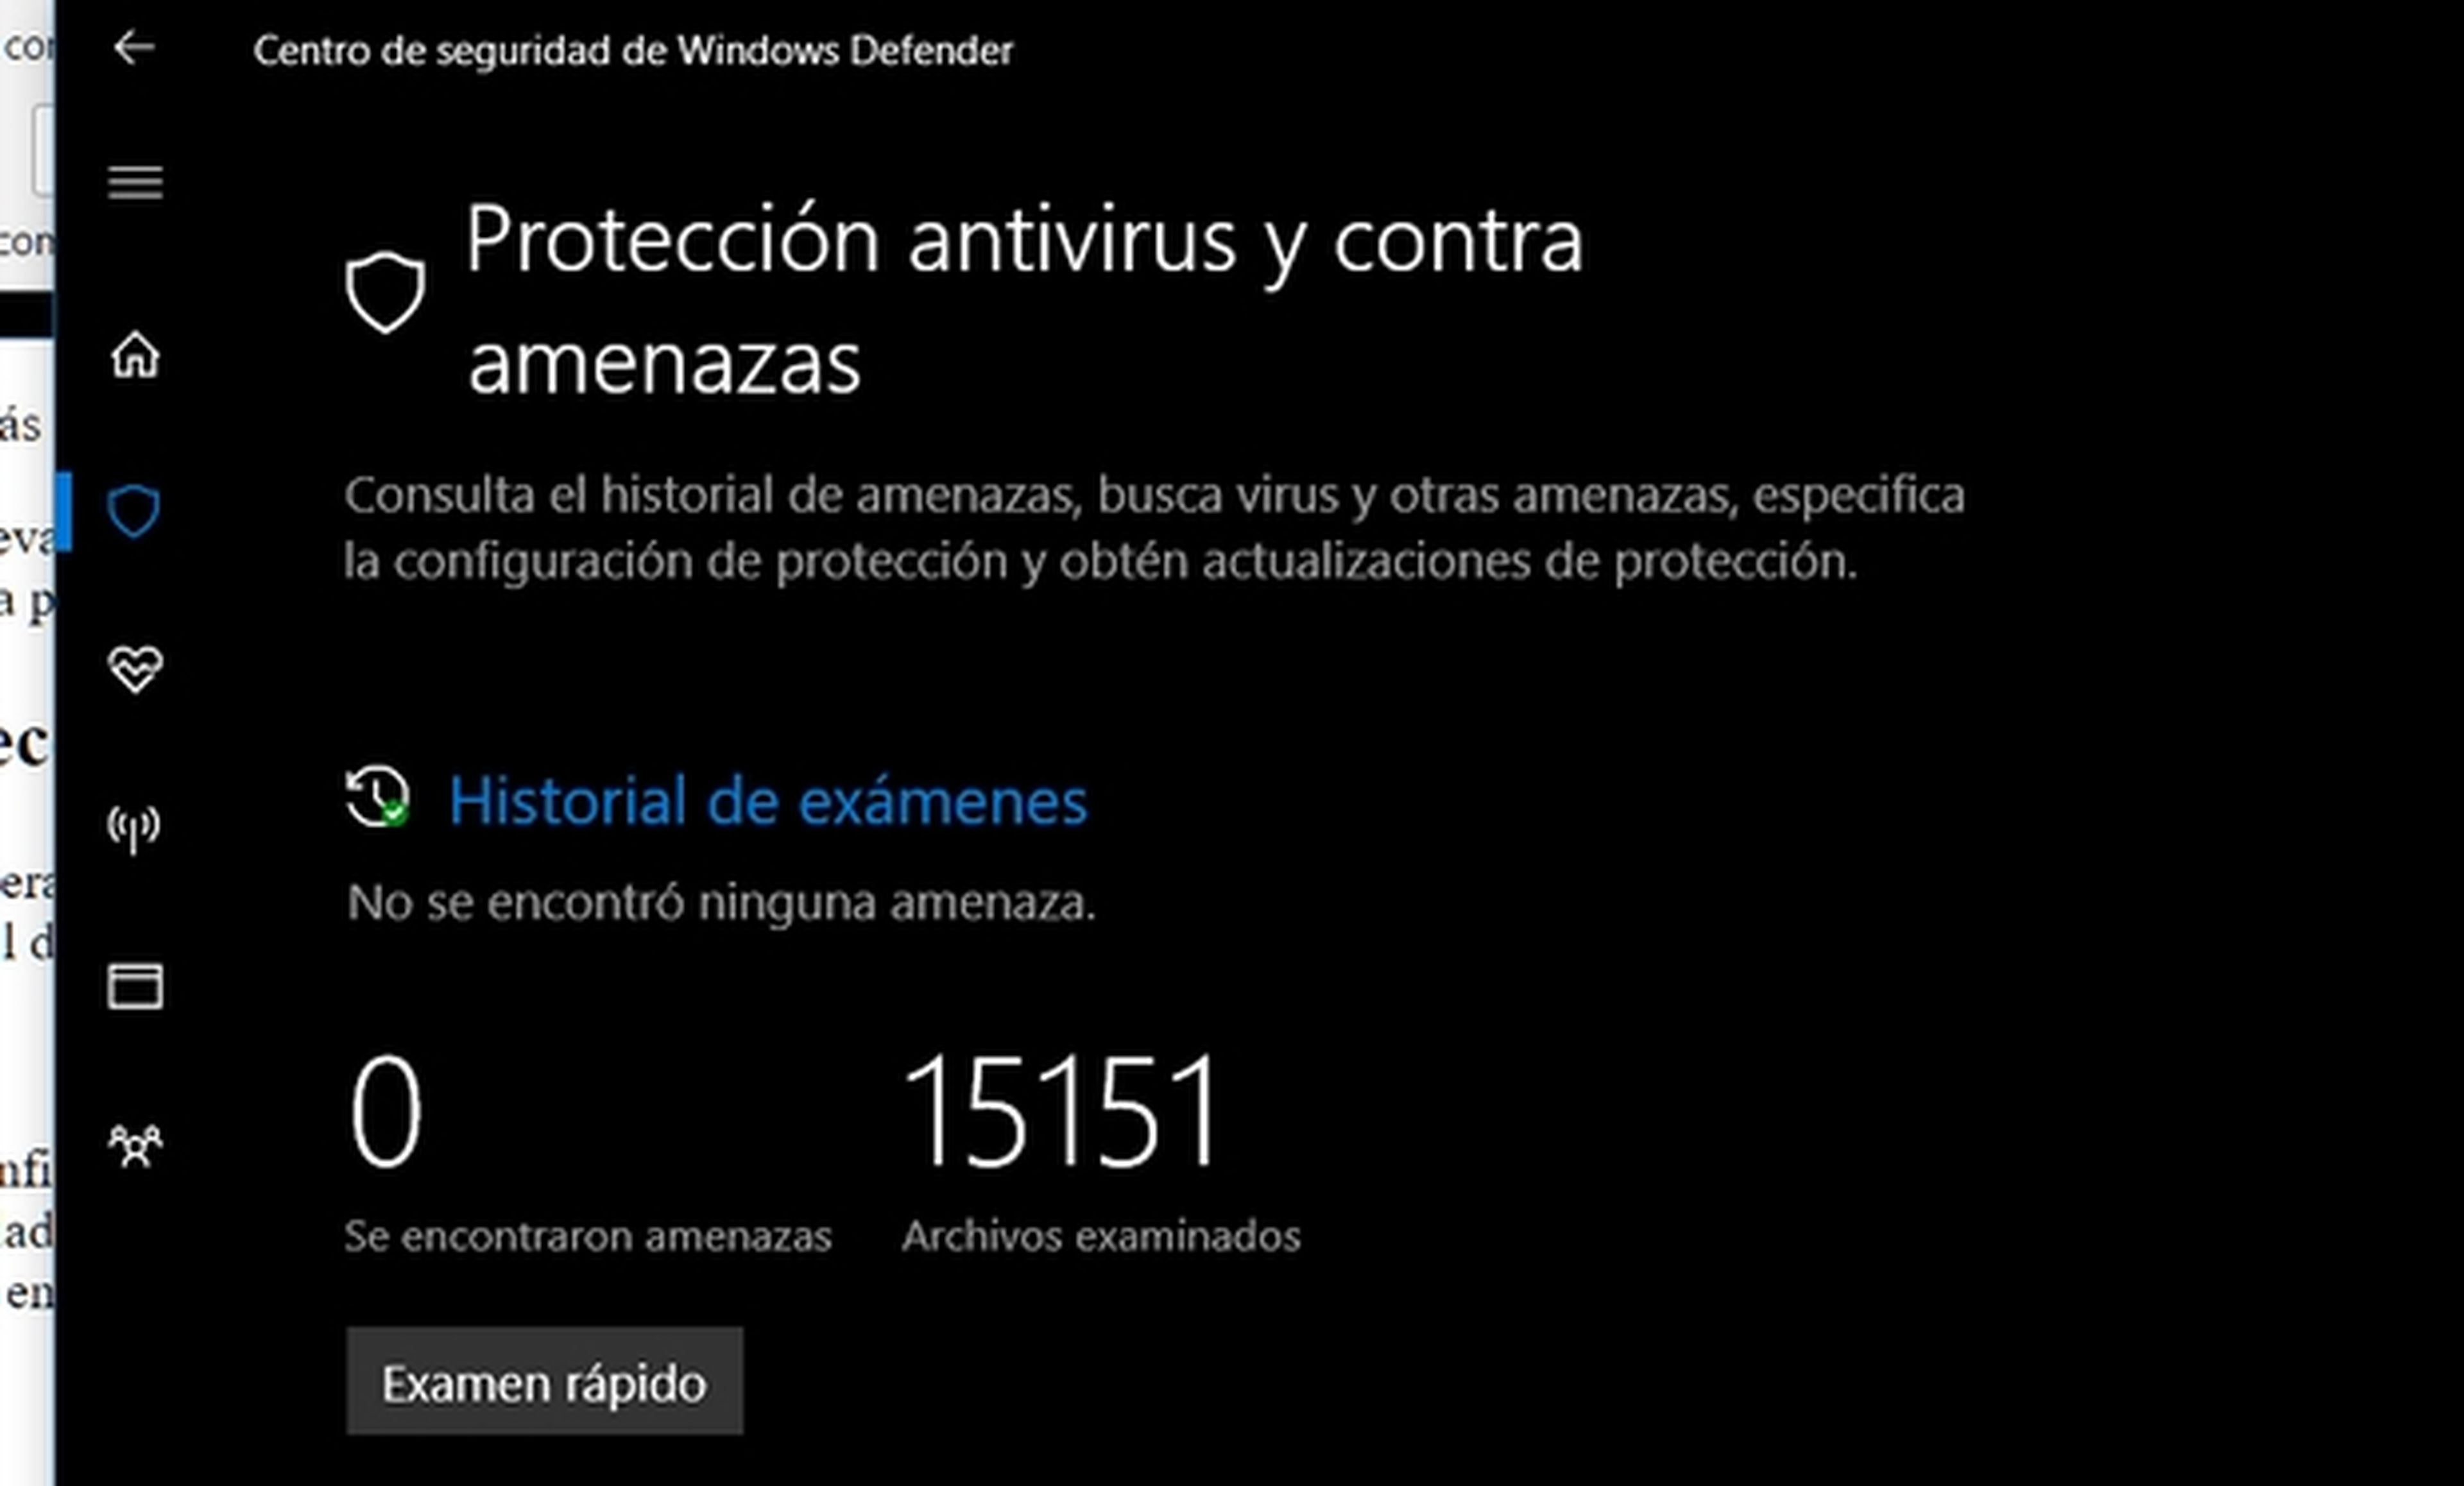 Blinda tu PC con el nuevo Centro de Seguridad de Windows Defender